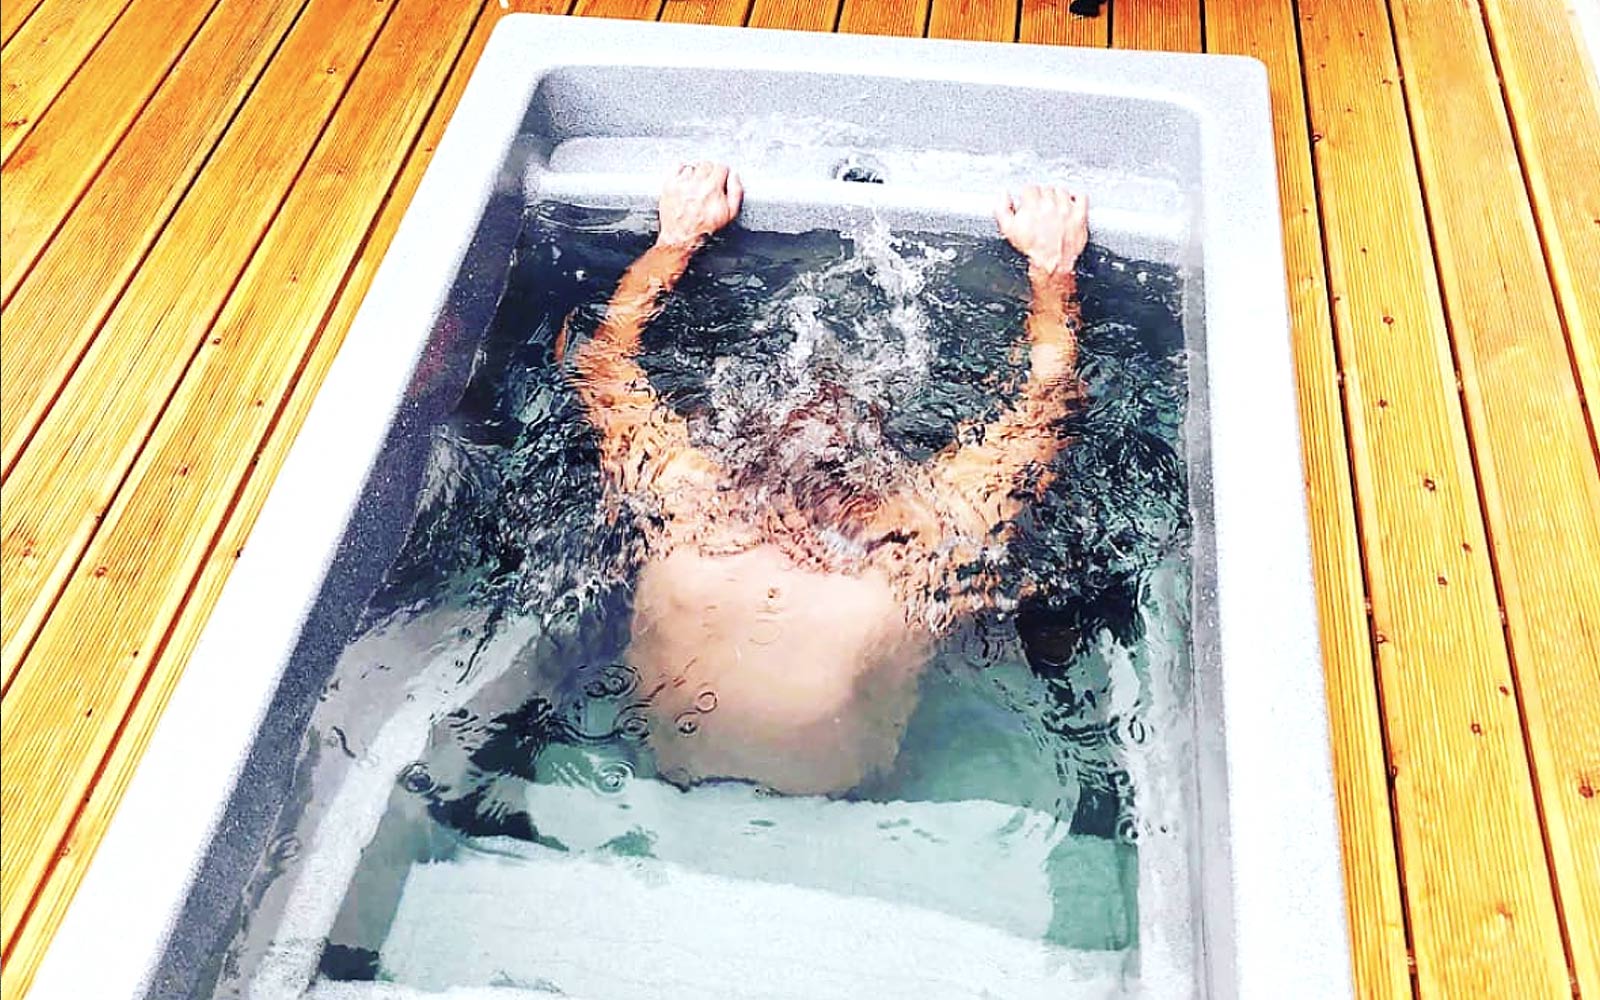 Pro ochlazení můžete využít ochlazovací bazének